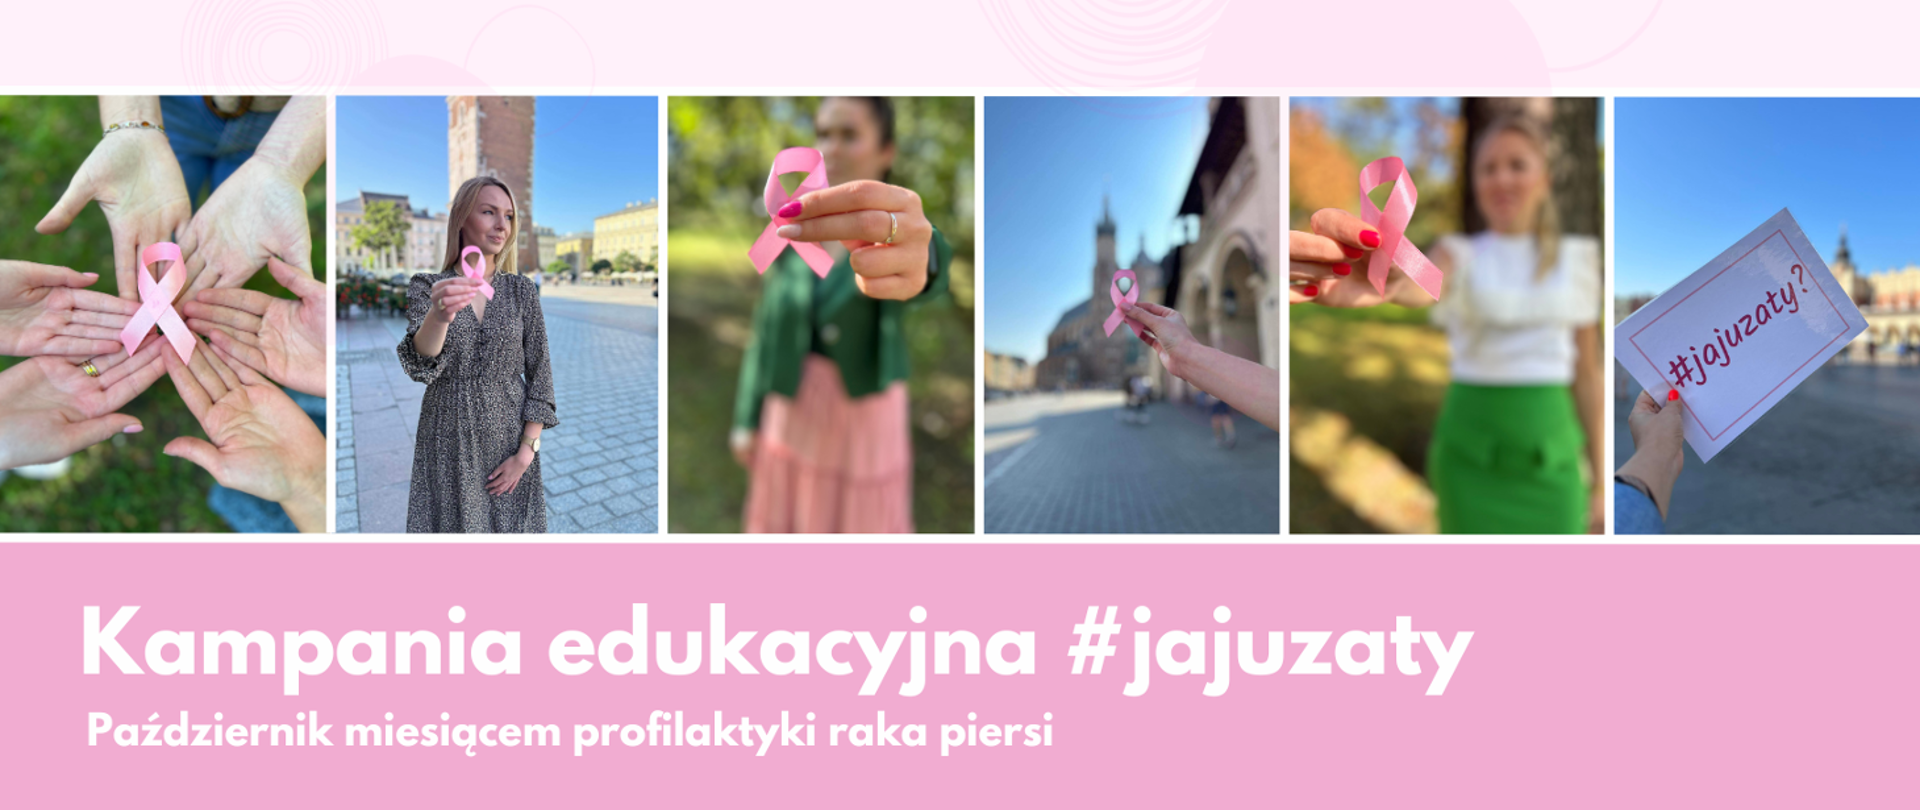 7 zdjęć z różową wstążeczka.
Pod zdjęciami na różowym tle białymi literami napis: Kampania edukacyjna #jajuzaty. Październik miesiącem profilaktyki raka piersi.